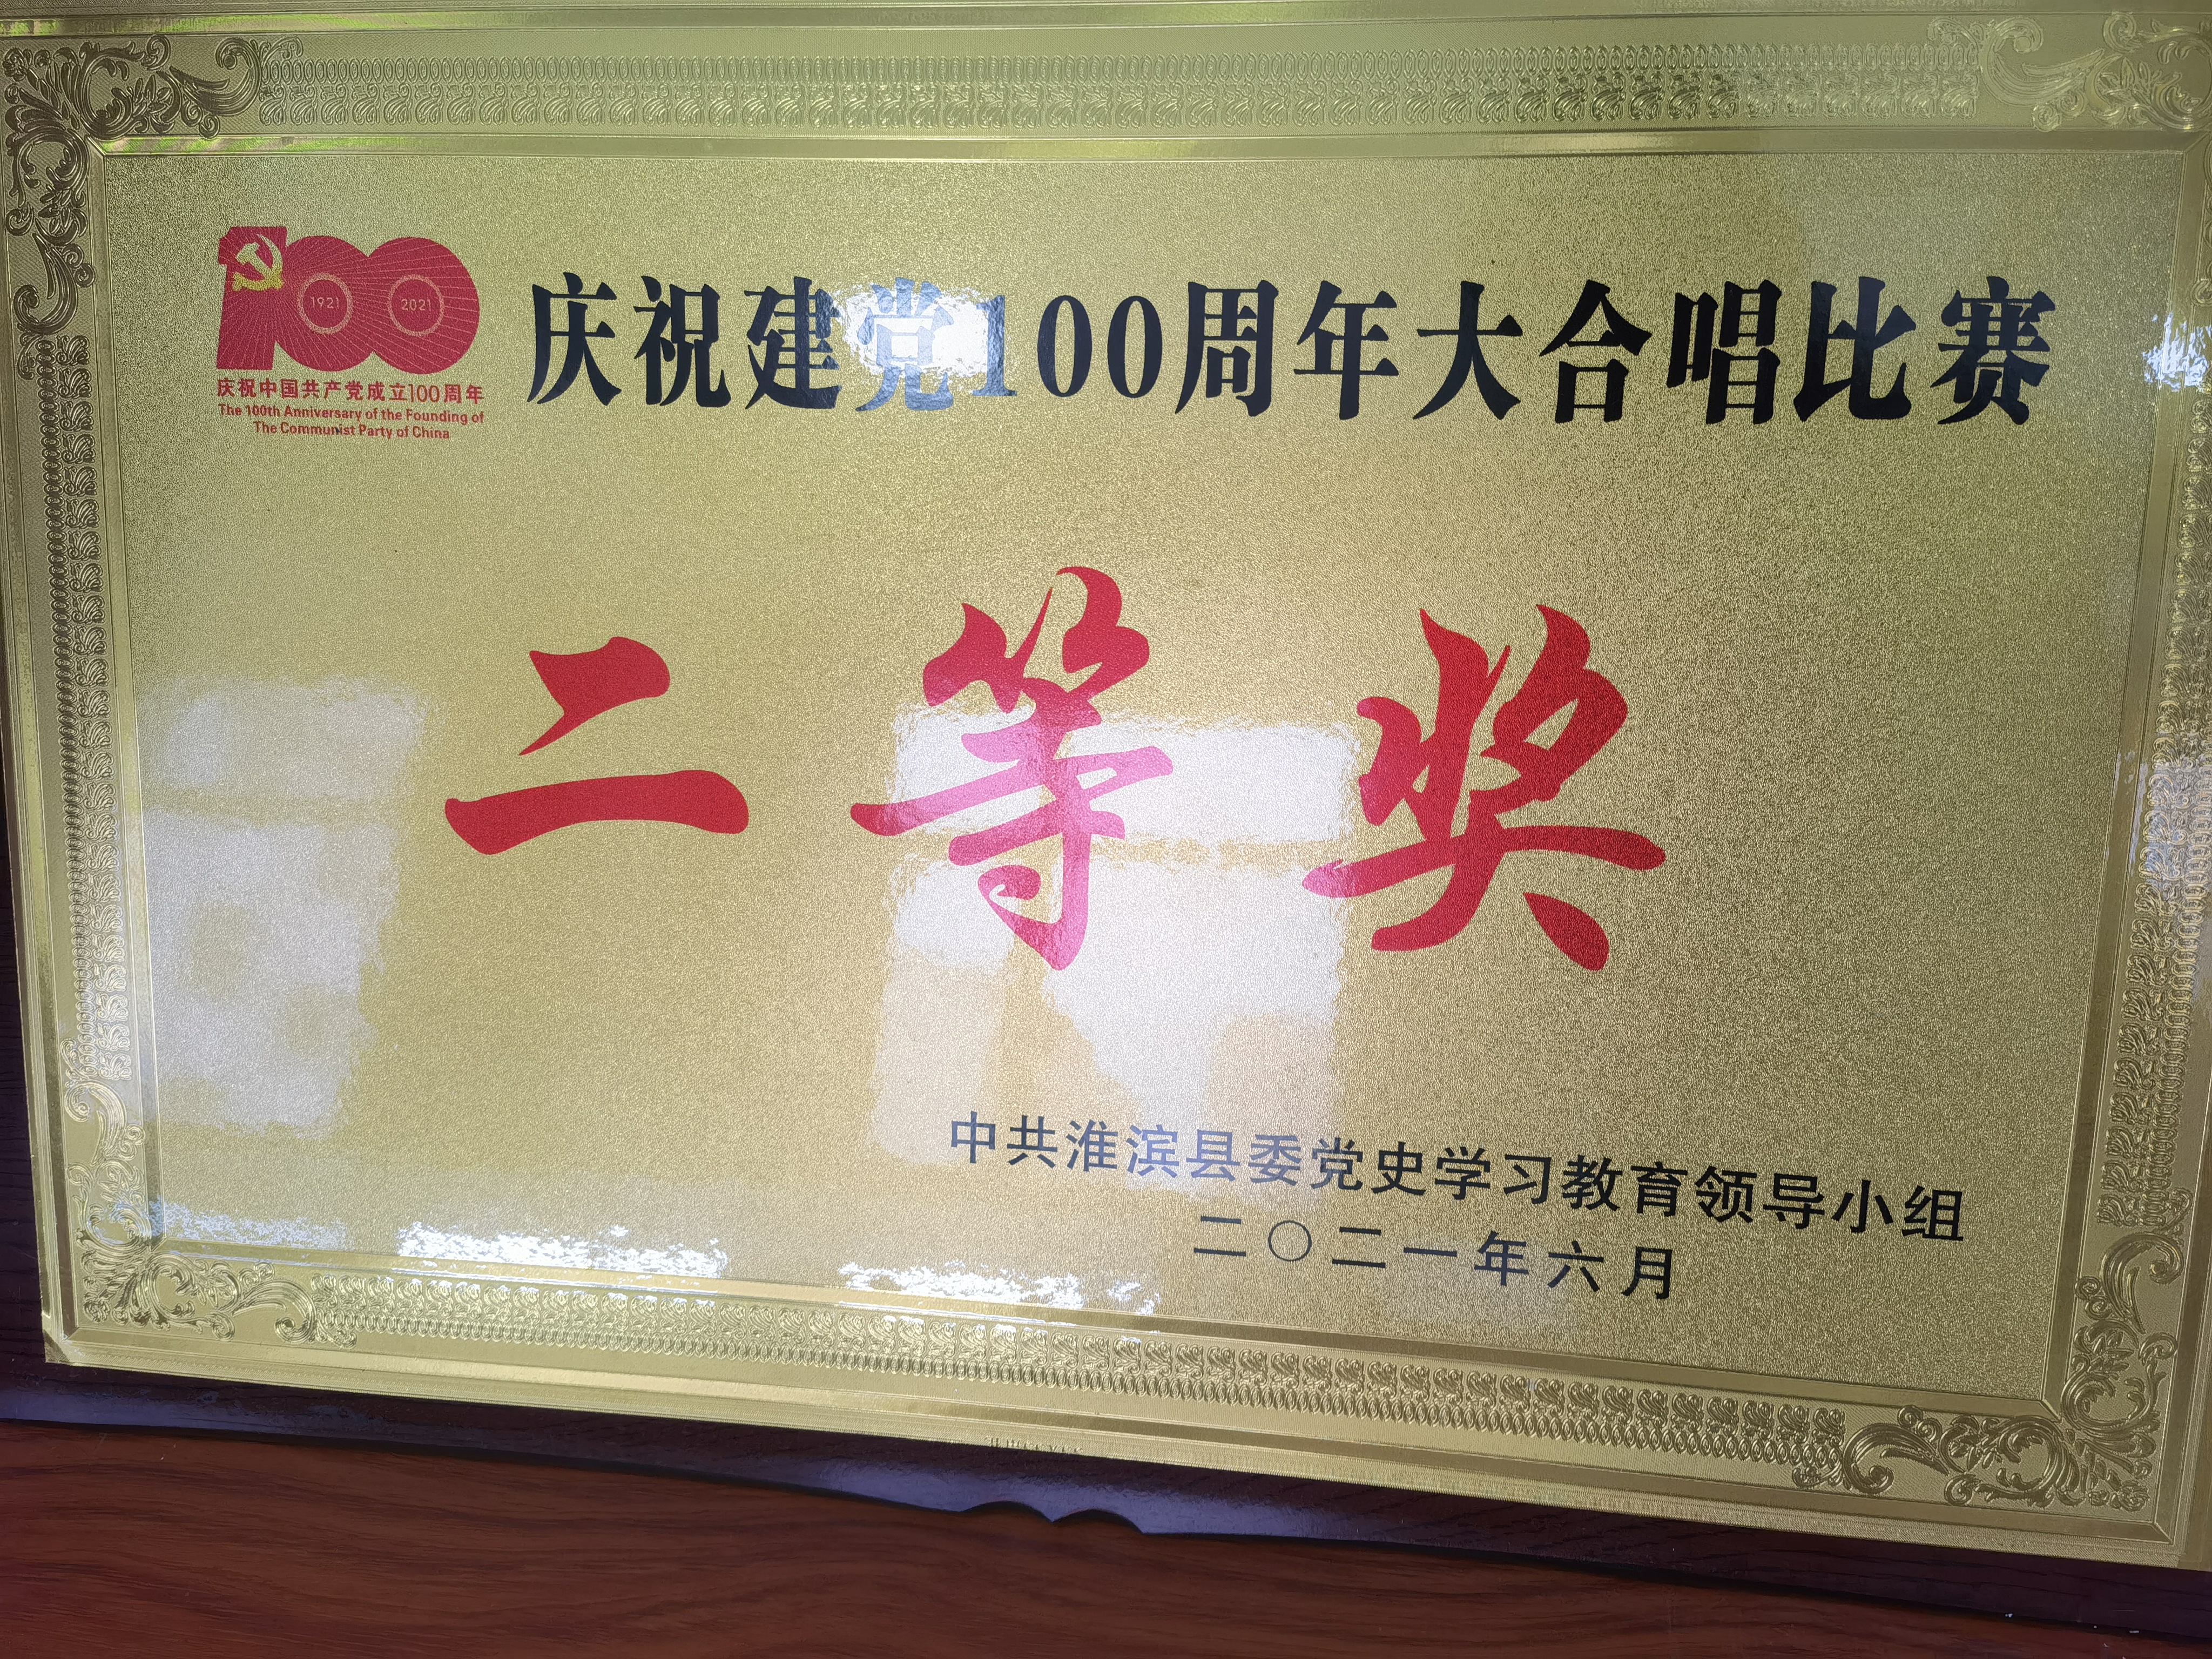 全县庆祝建党100周年大合唱比赛二等奖